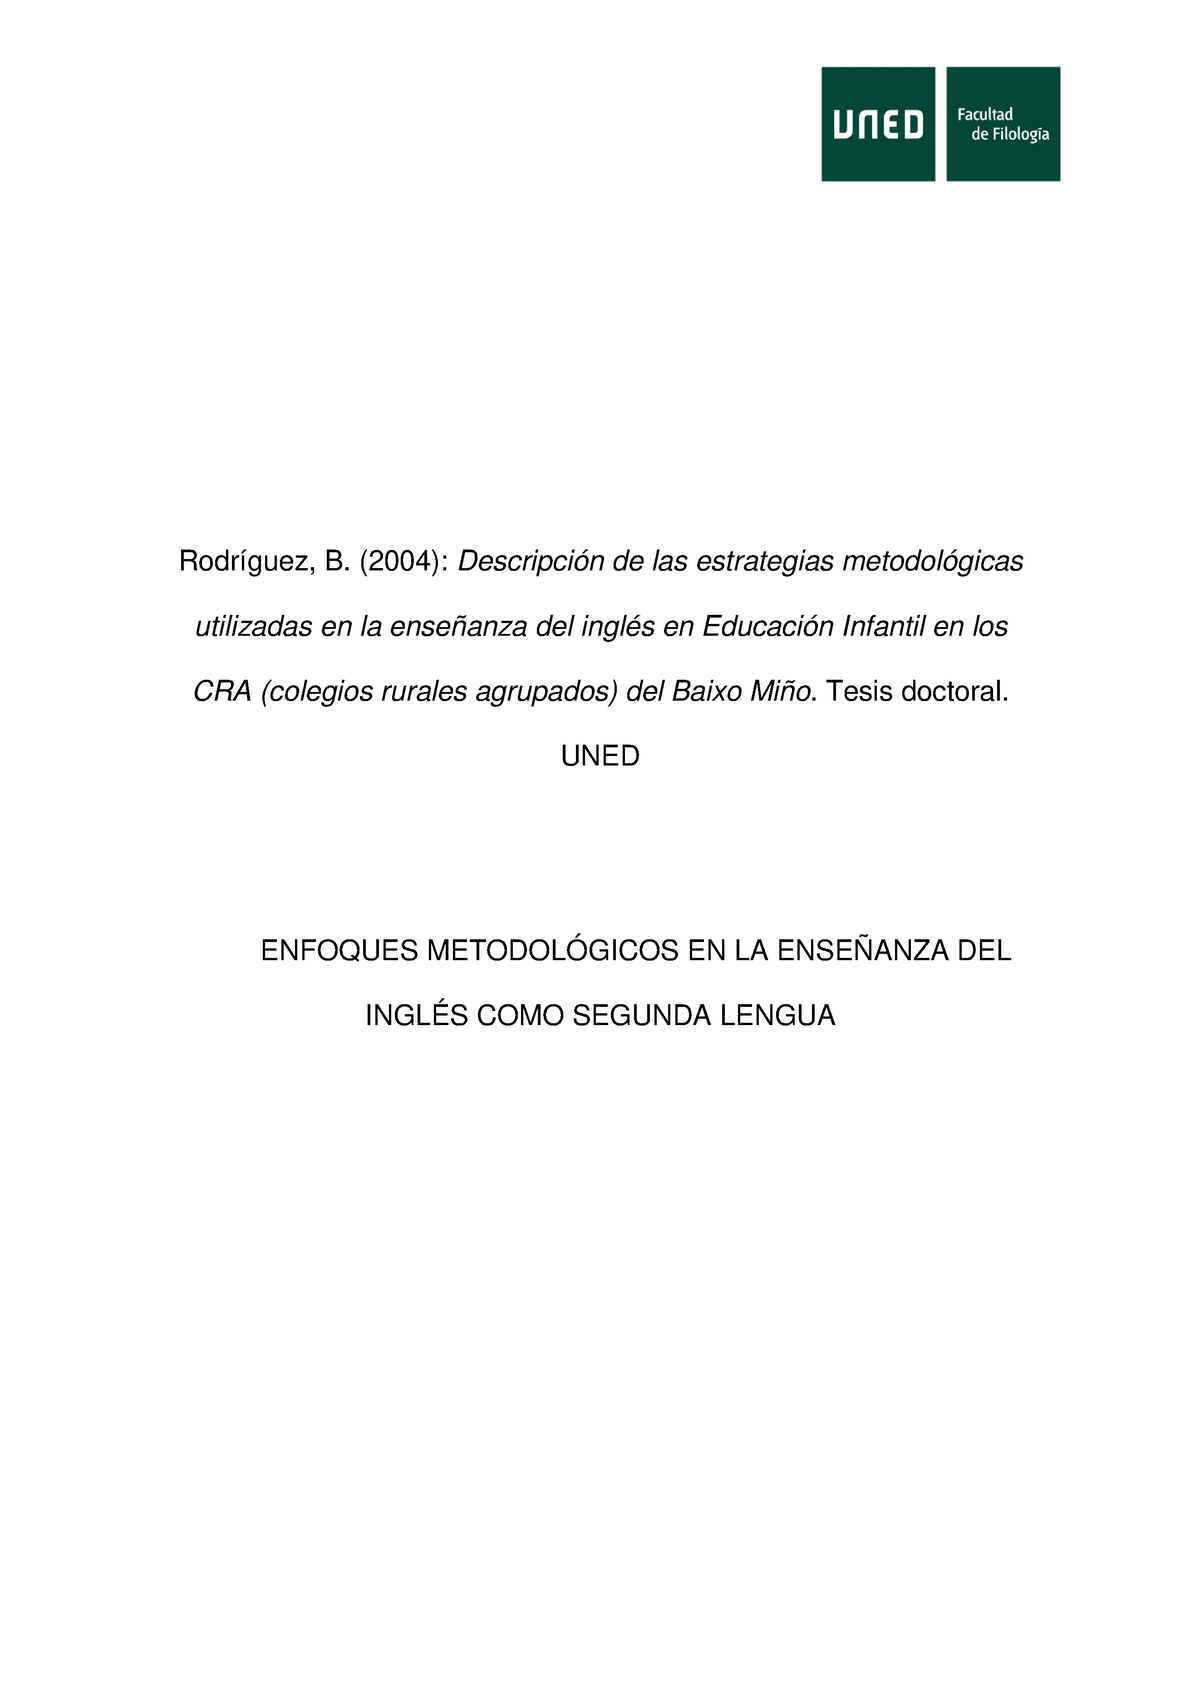 Enfoques metodologicos para la enseñanza de segundas lenguas - Rodríguez,  B. (2004): Descripción de - Studocu